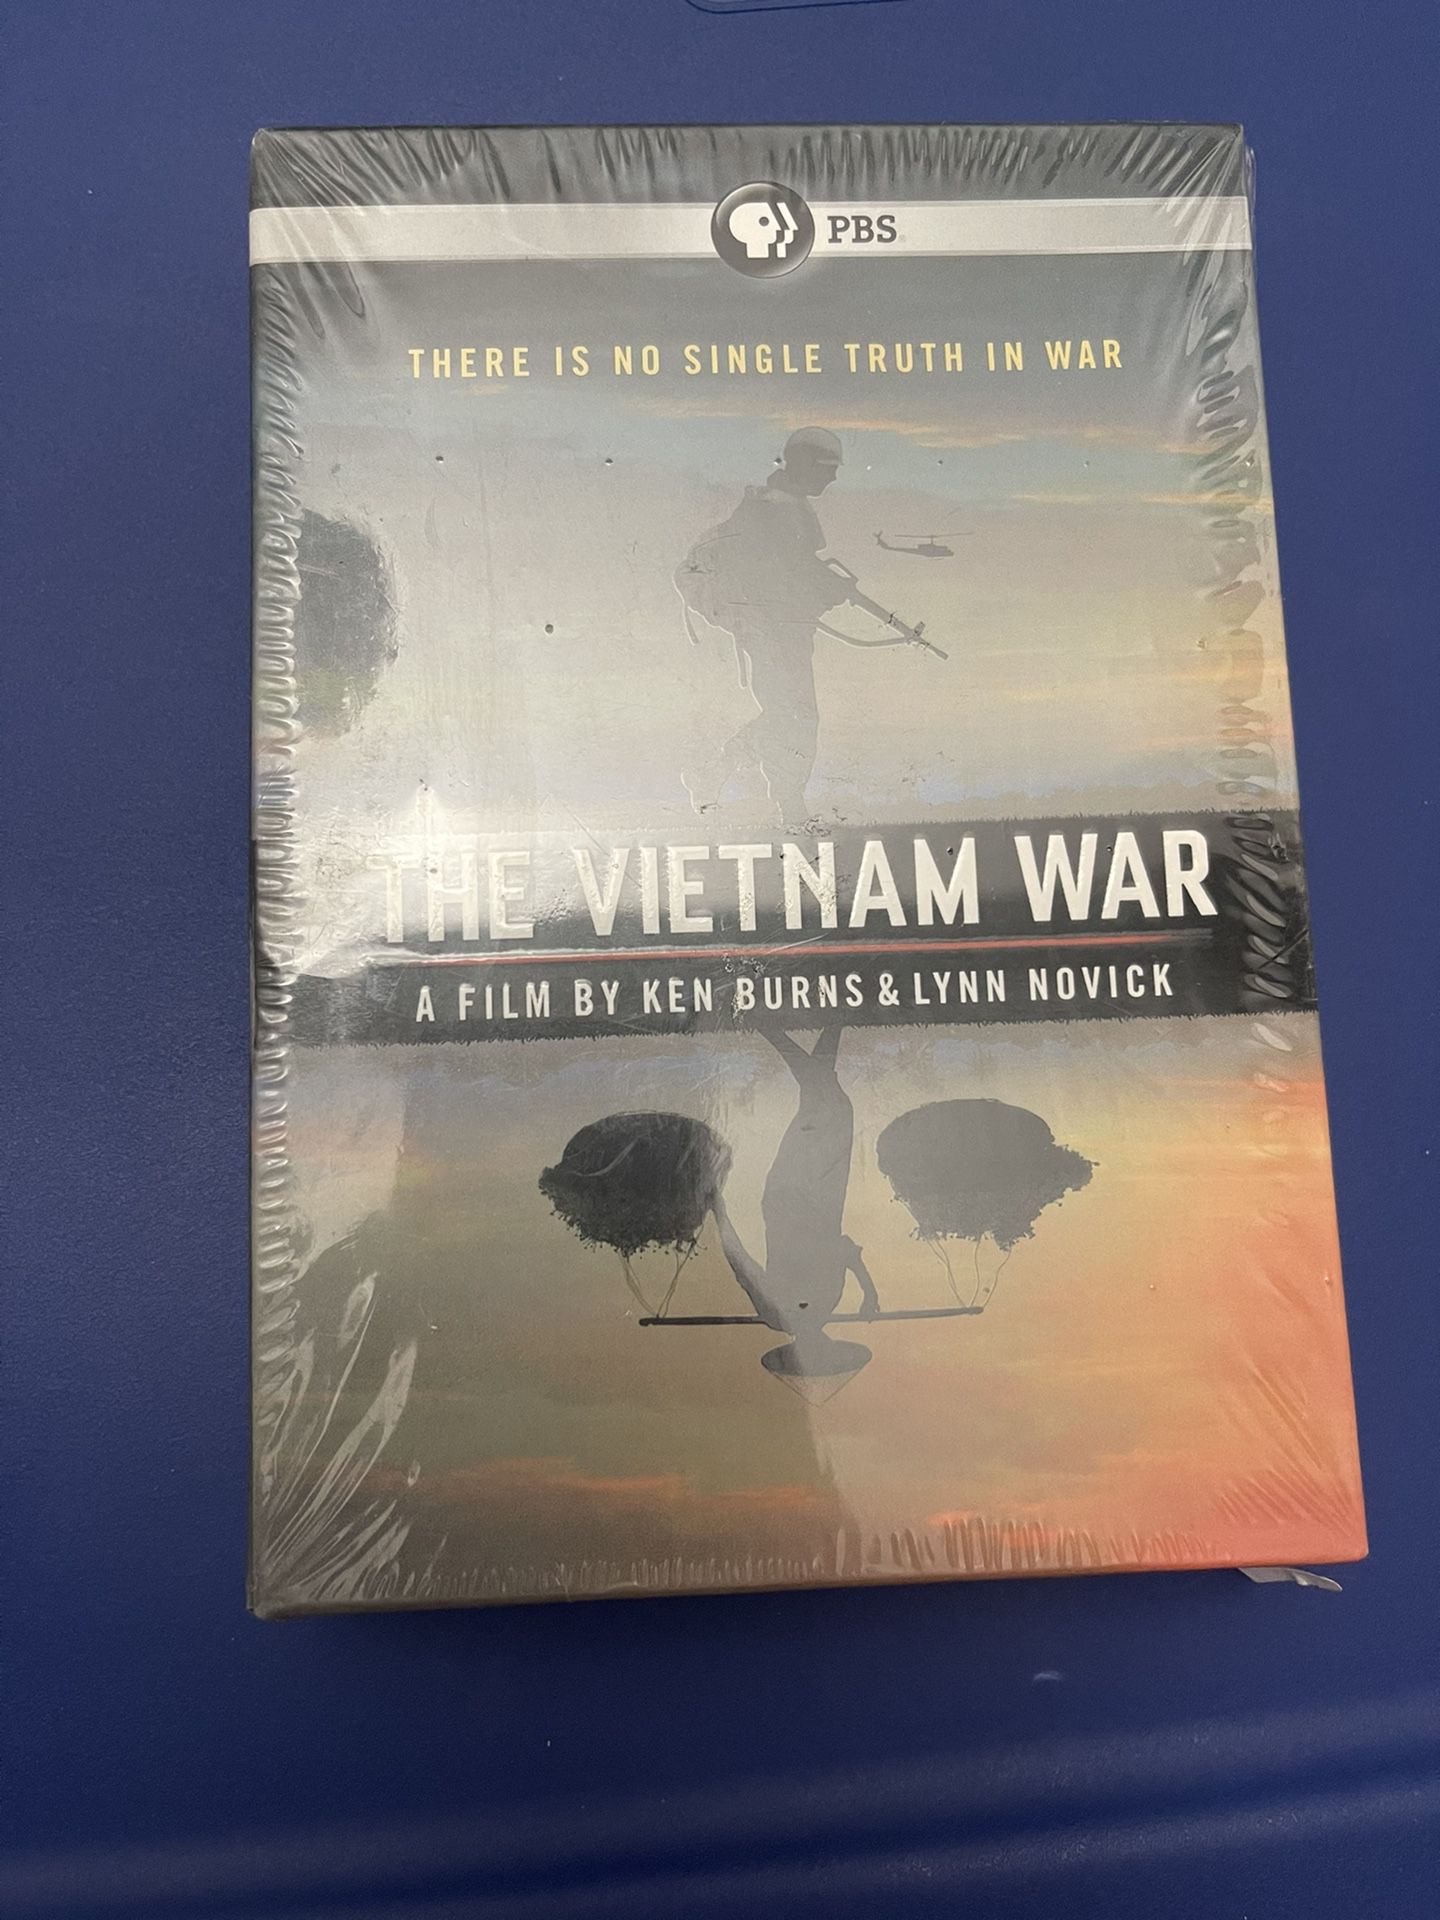 The Vietnam War: A Film by Ken Burns & Lynn Novick - The Complete 18hrs